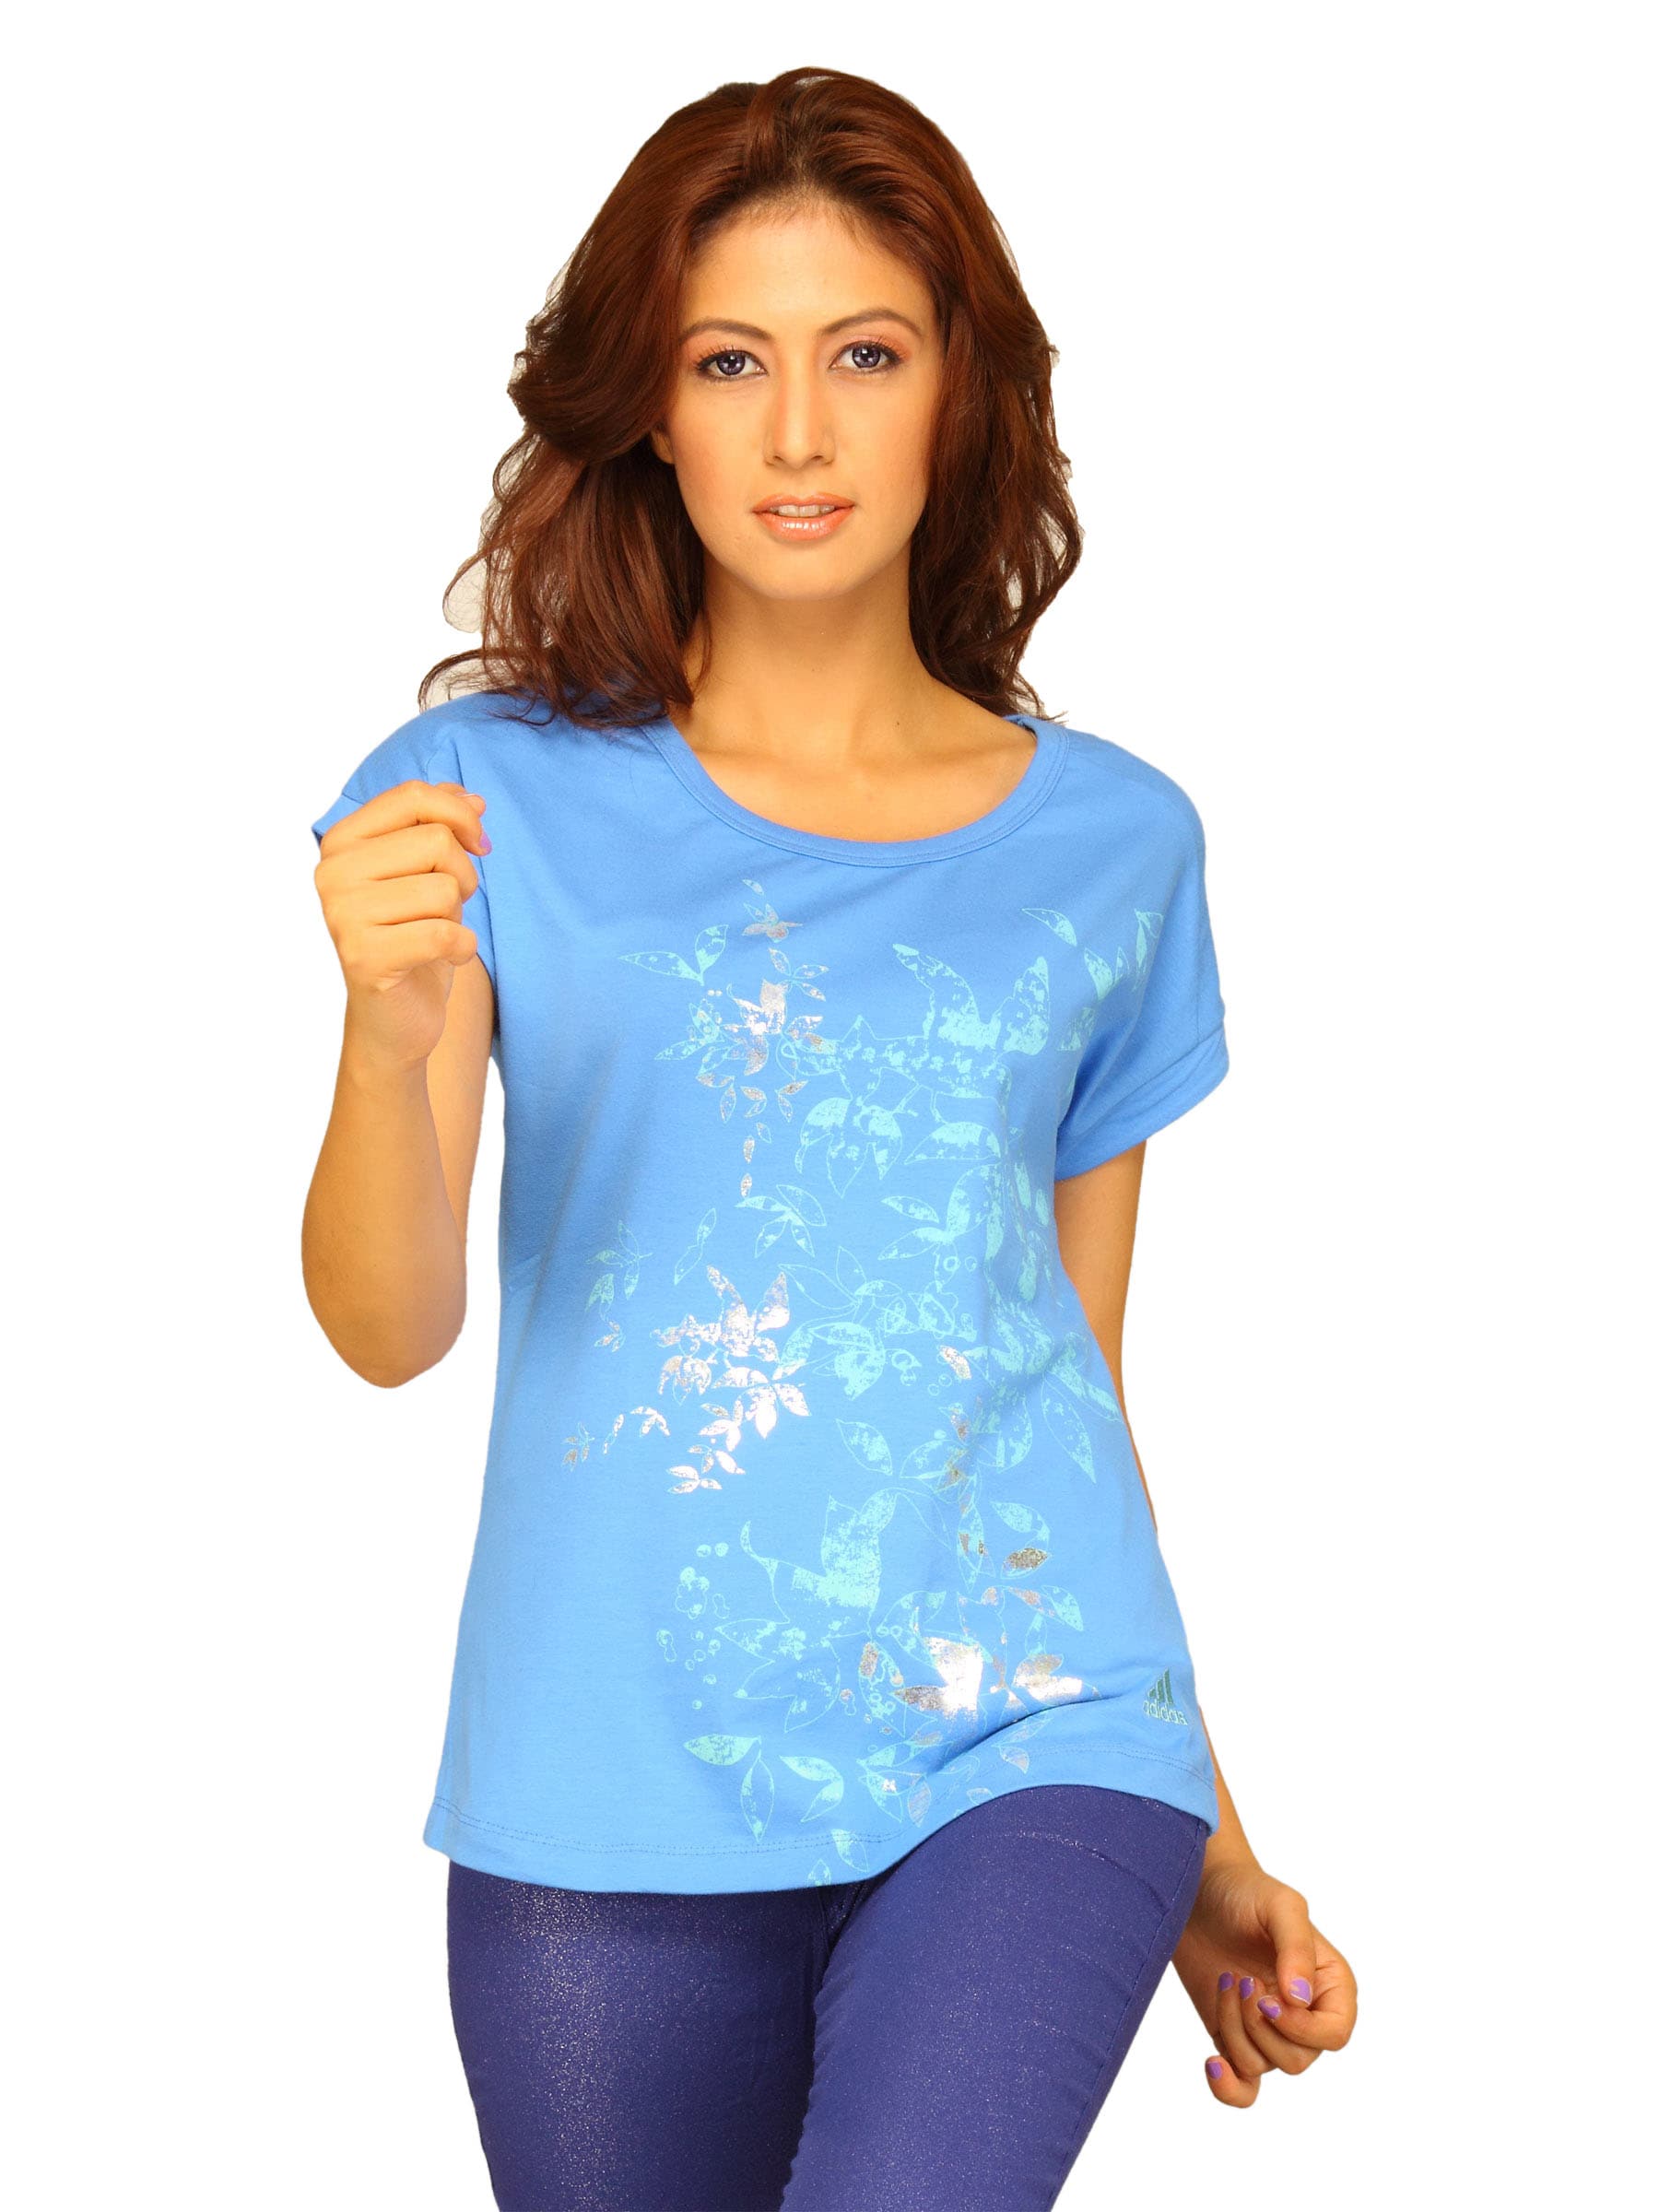 ADIDAS Women's Flora Blue T-shirt